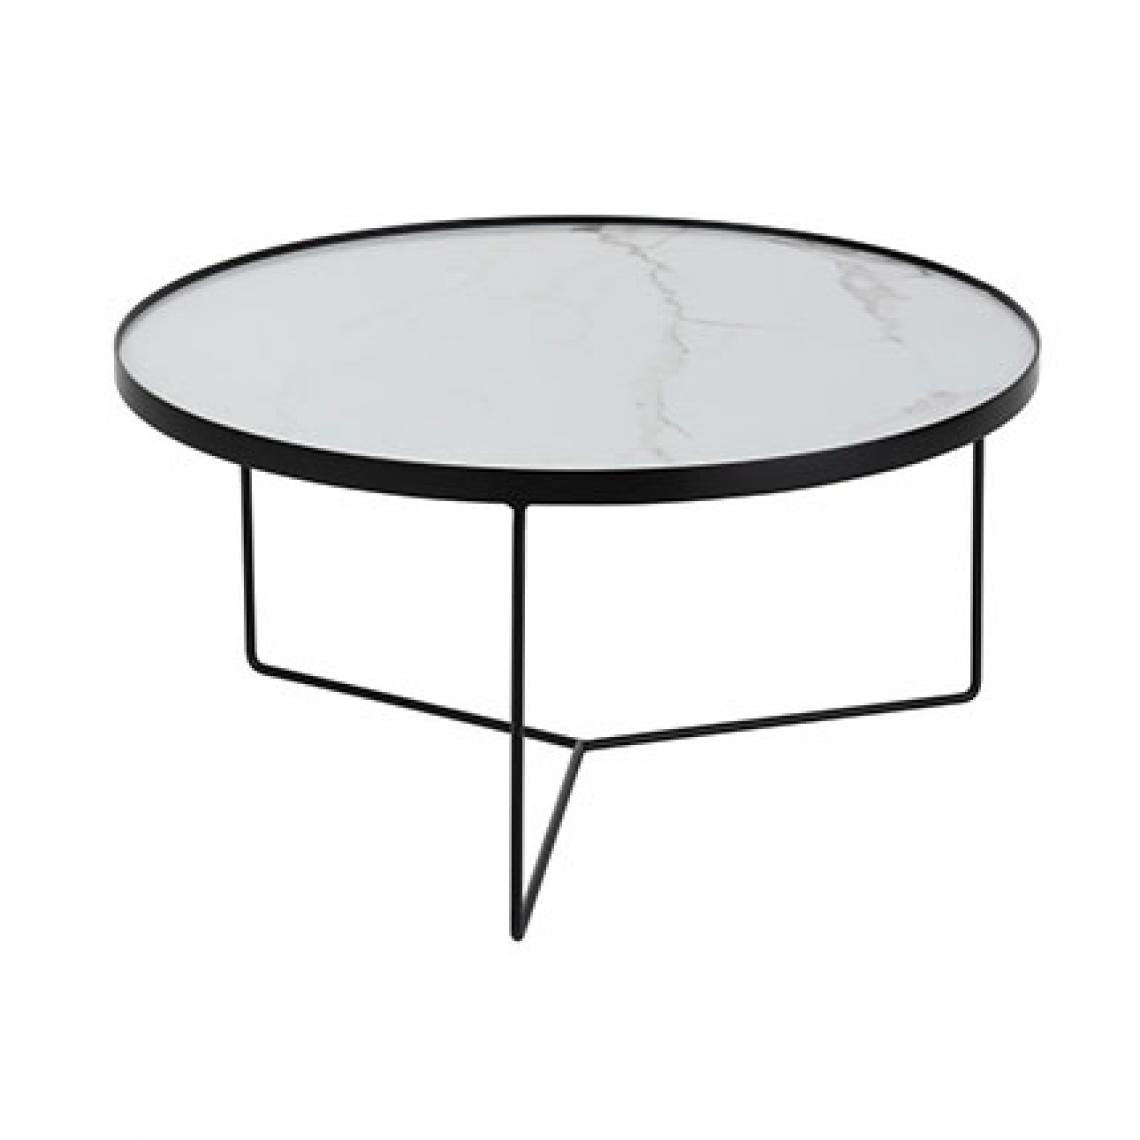 HELLIN - Table basse ronde 80 cm en bois blanc et métal - Tables à manger